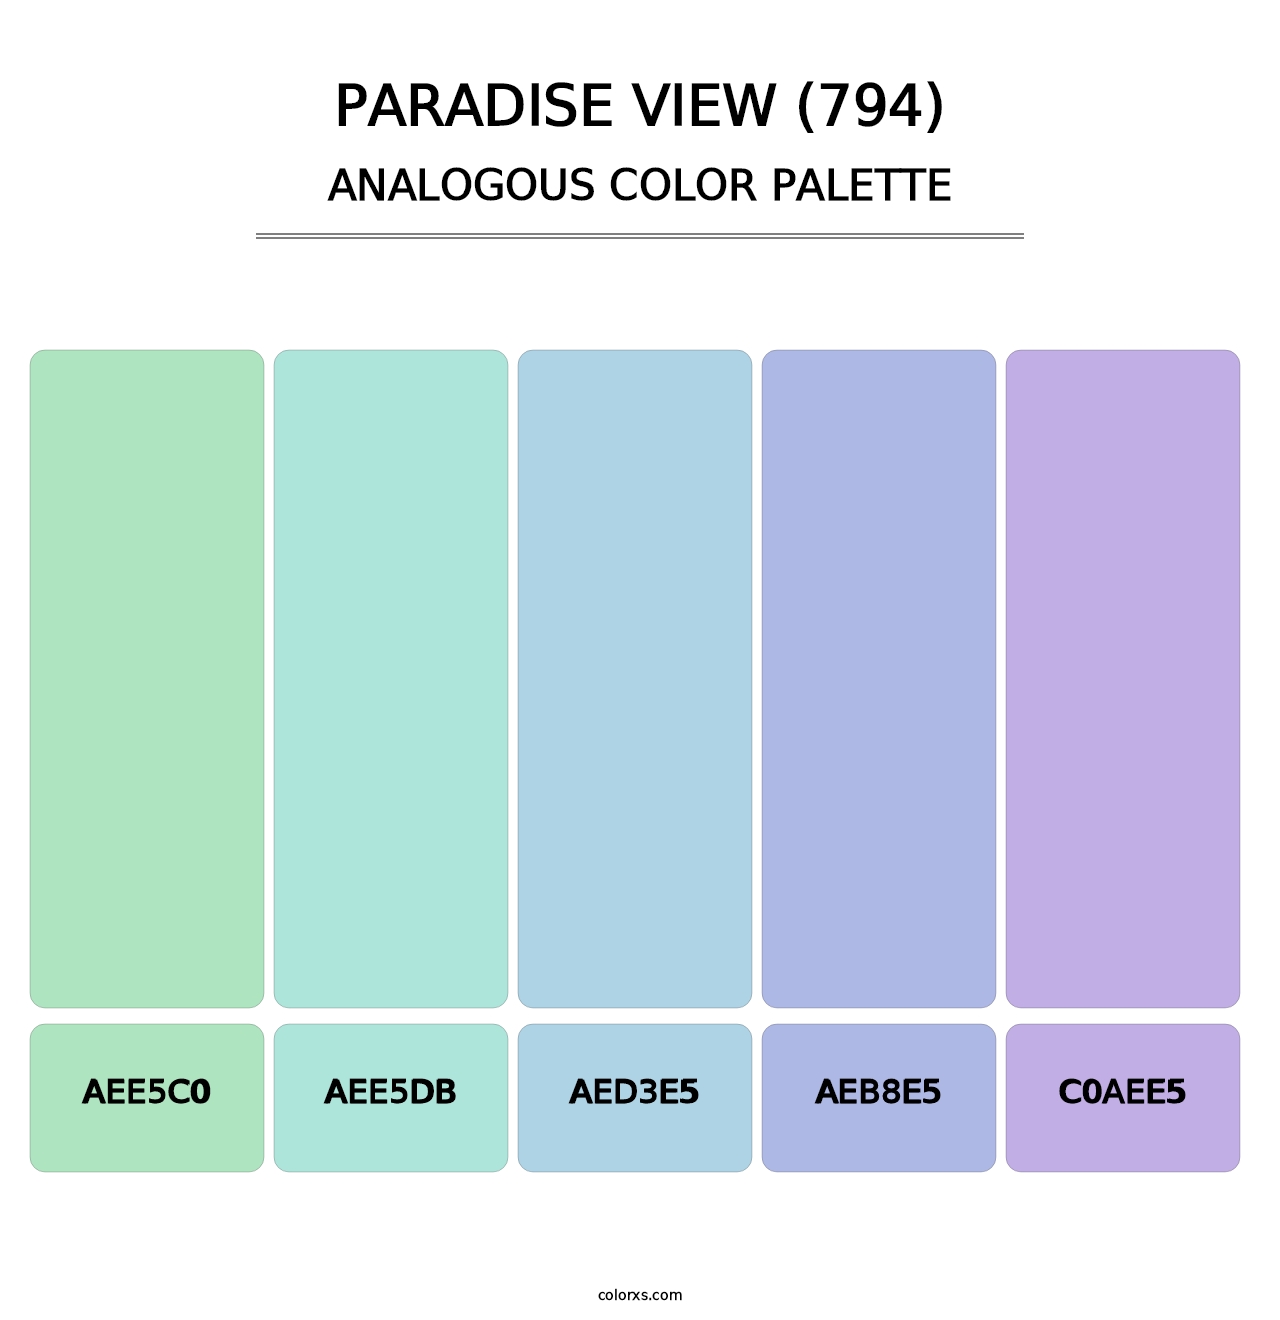 Paradise View (794) - Analogous Color Palette